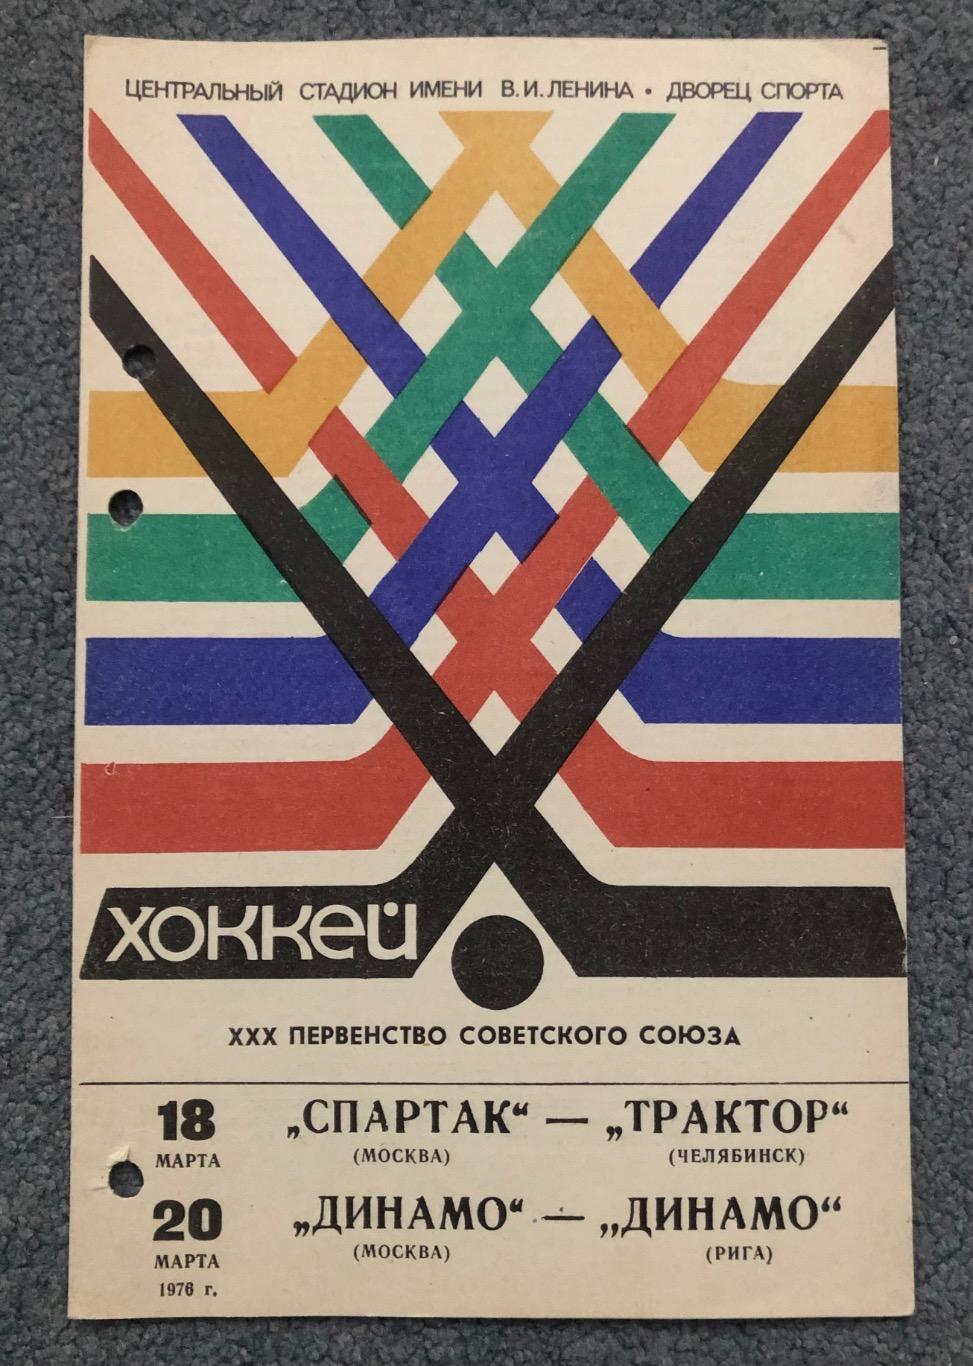 Спартак Москва - Трактор, Динамо Москва - Динамо Рига, 18 и 20.03.1976